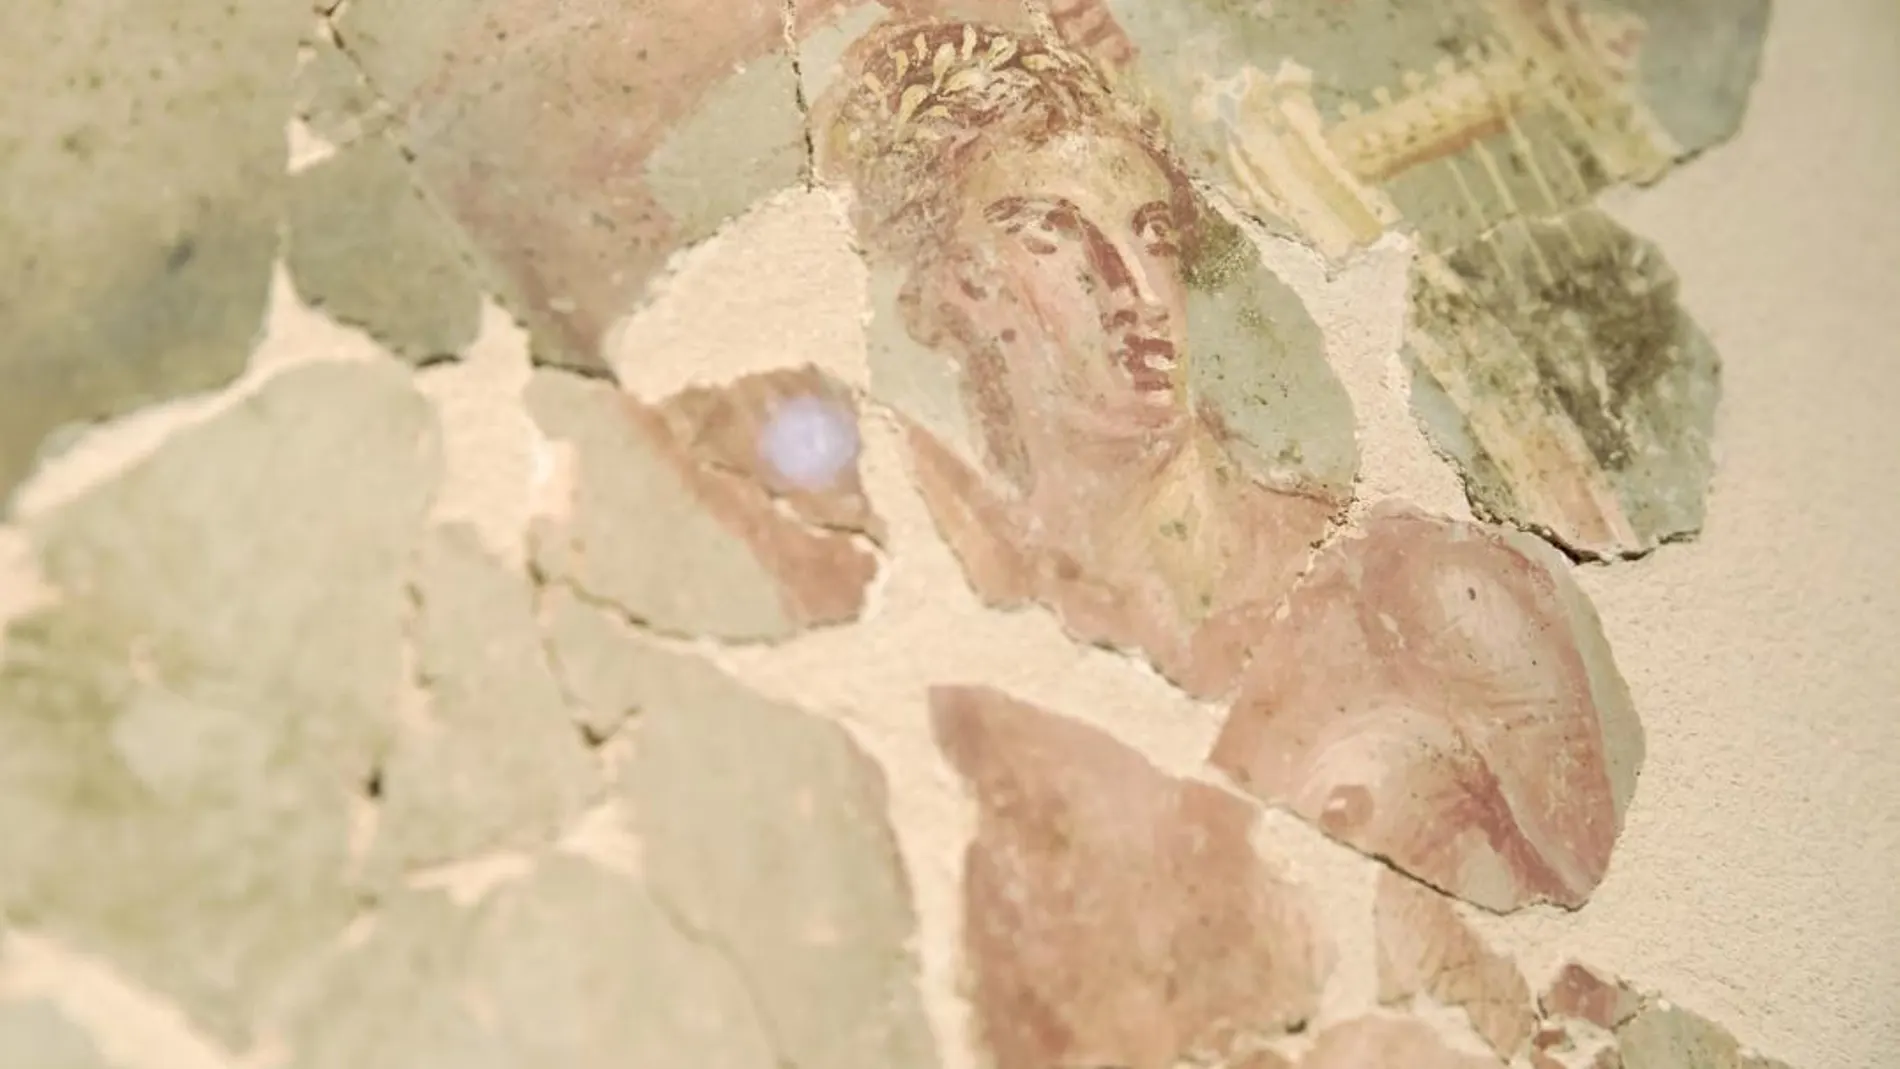 Apolo, dios de las artes, normalmente aparecía acompañado de las nueve musas y era representado con una lira, como en este cuadro del siglo I d. C.